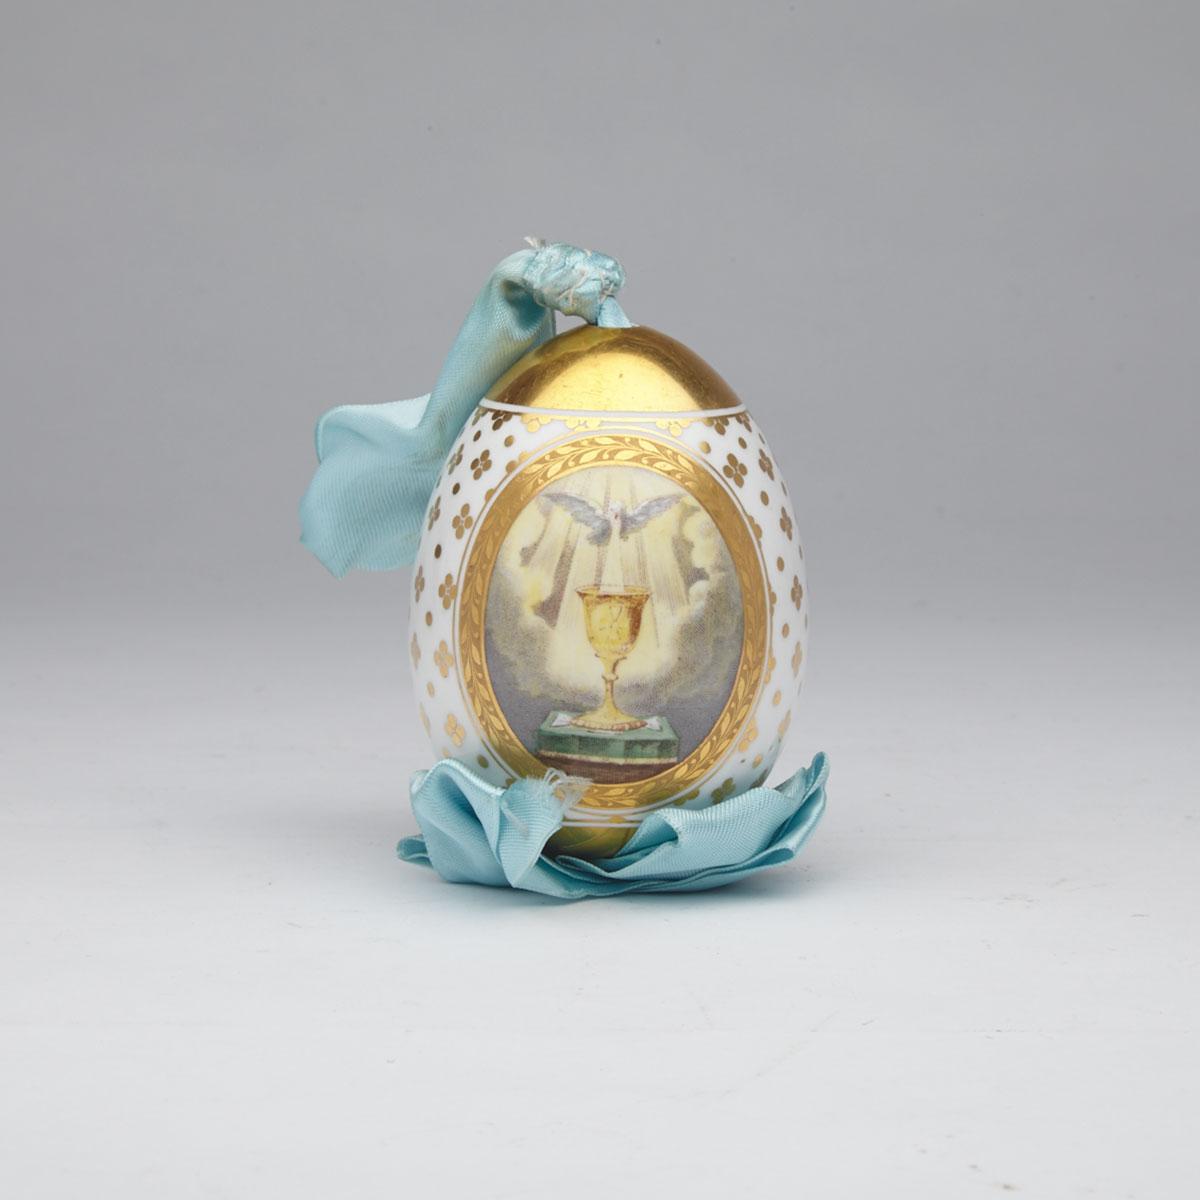 Russian Porcelain Easter Egg, c.1900